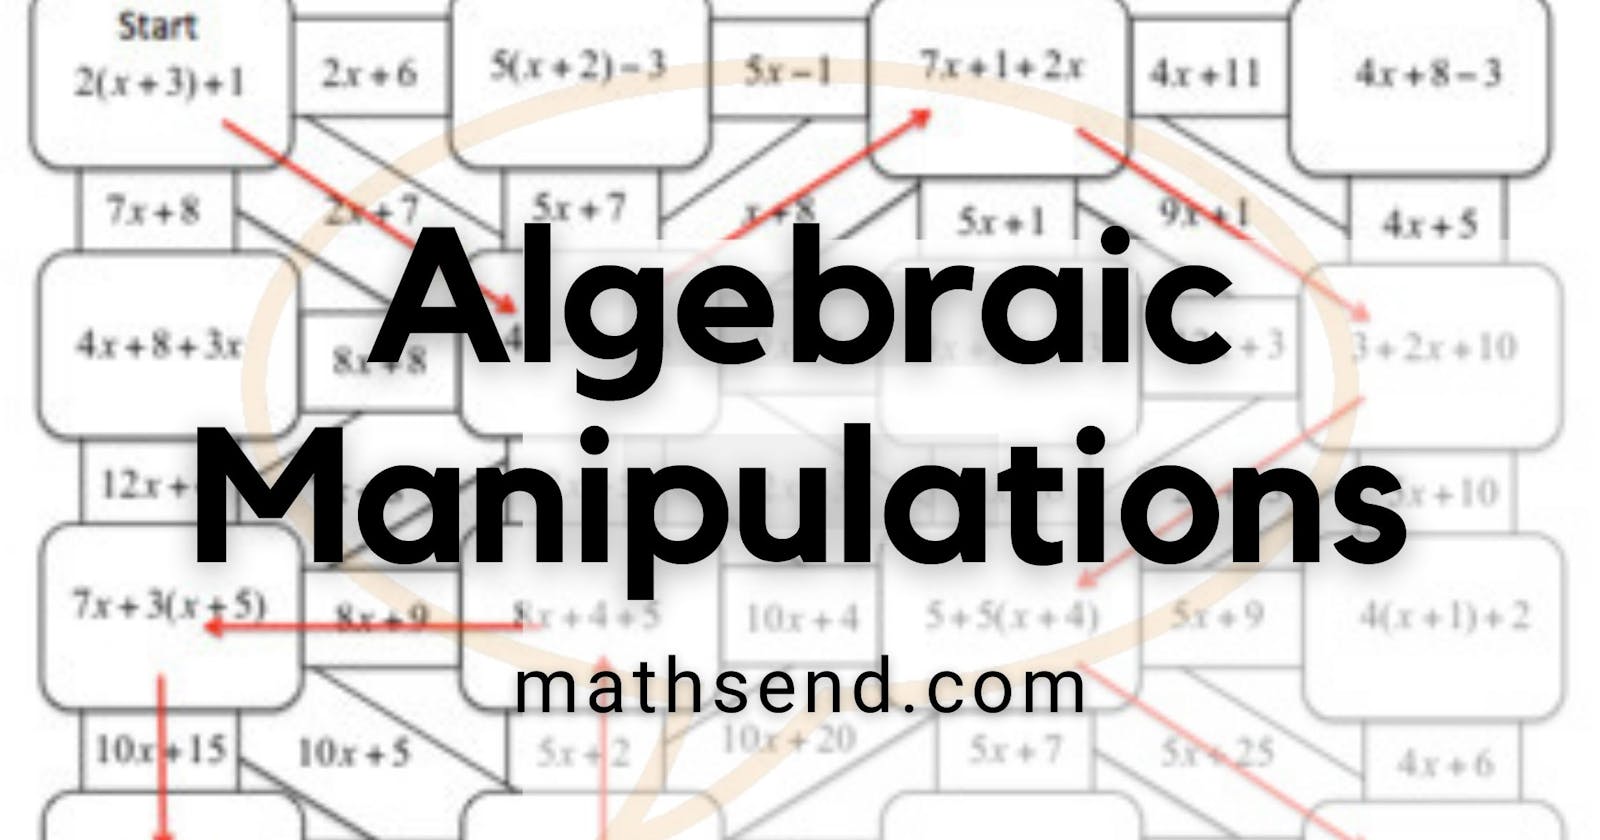 Algebraic Manipulations with Mathsend